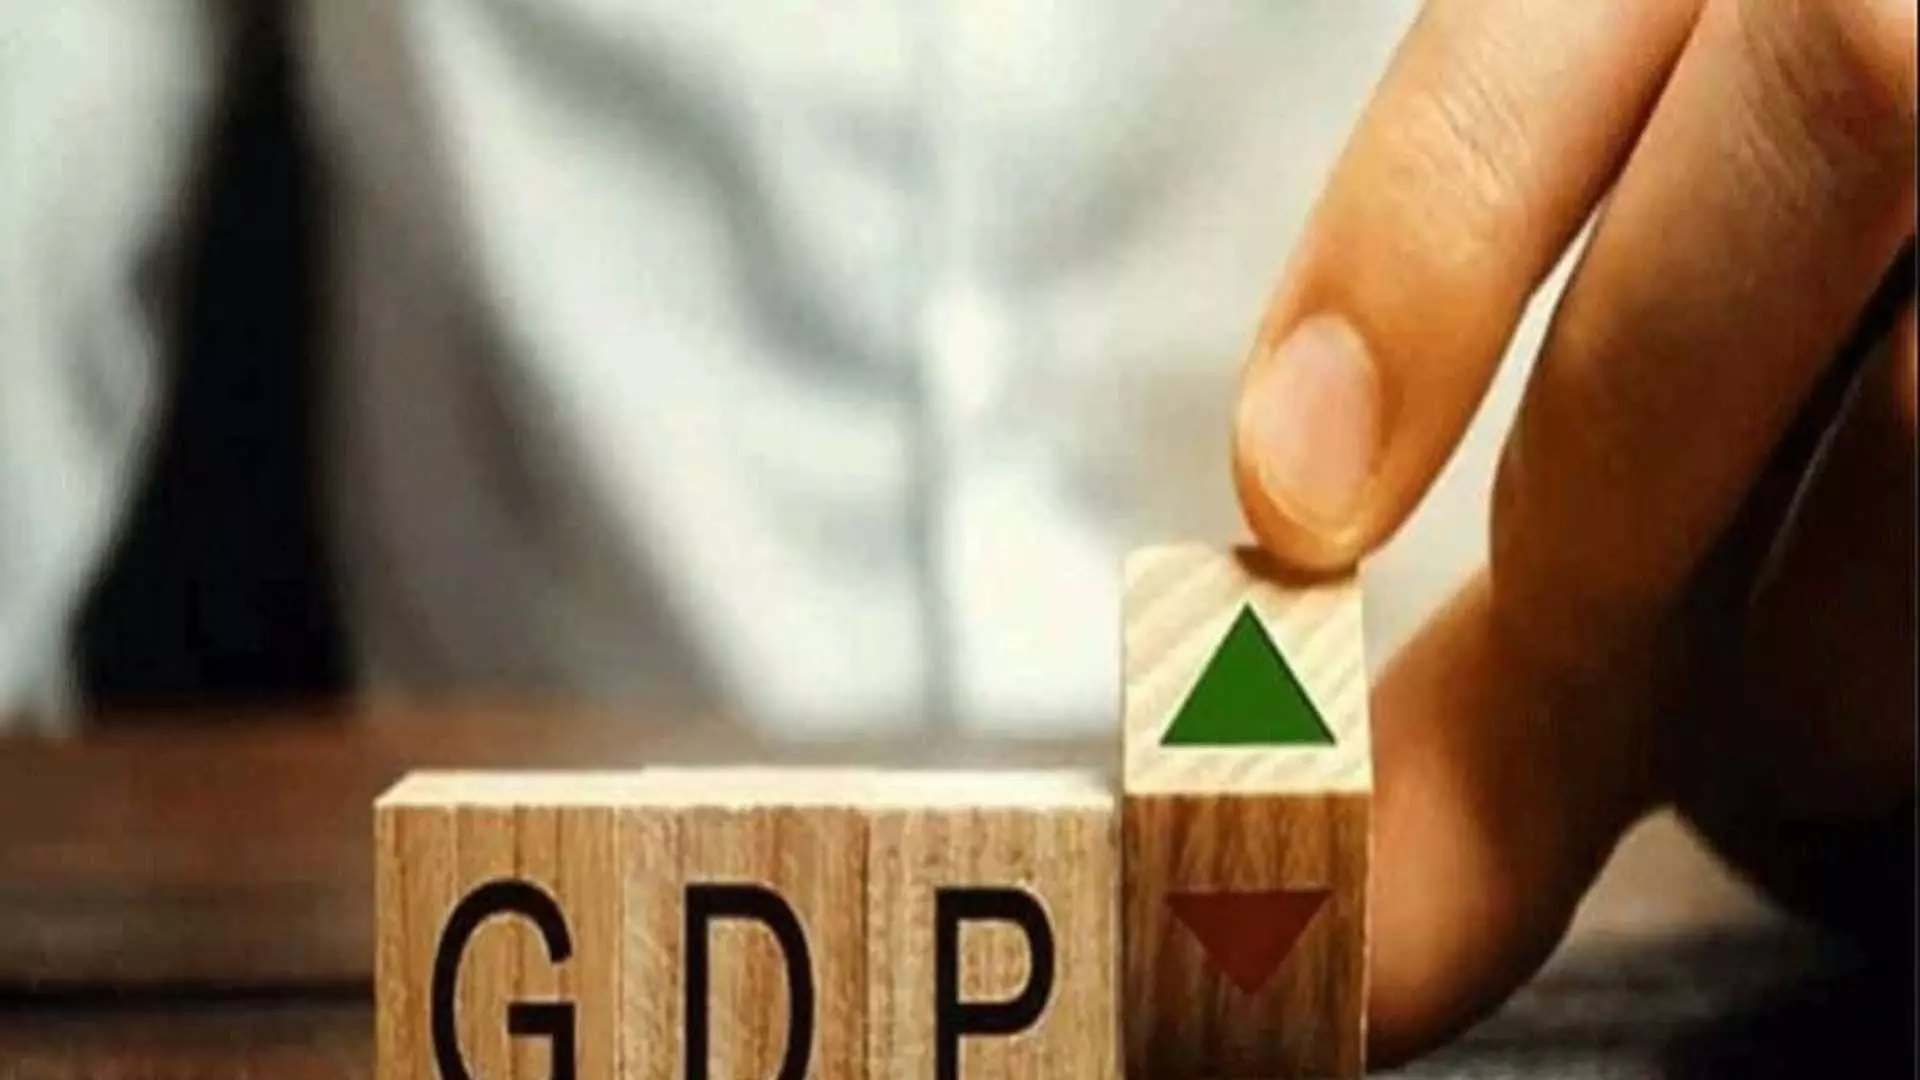 Delhi News: वित्त वर्ष 2025 में भारत की जीडीपी वृद्धि दर 7 प्रतिशत रहेगी